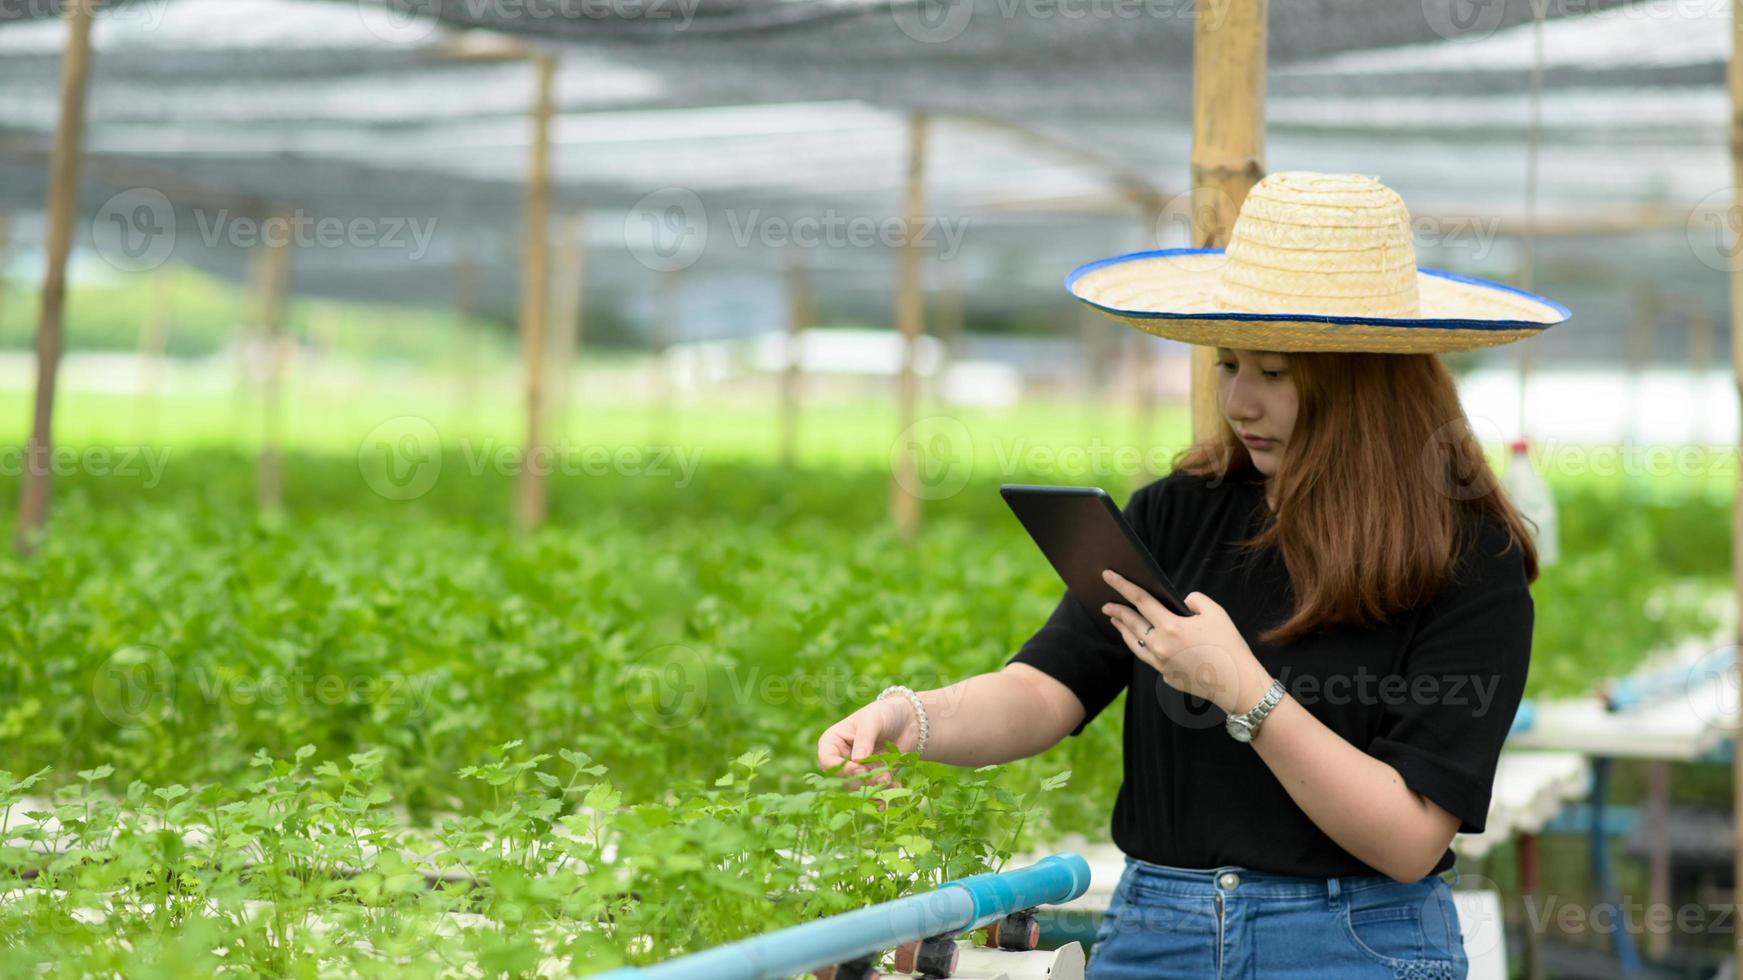 een tienermeisjesboer die een tablet gebruikt, zorgt en inspecteert groenten in een kas. foto